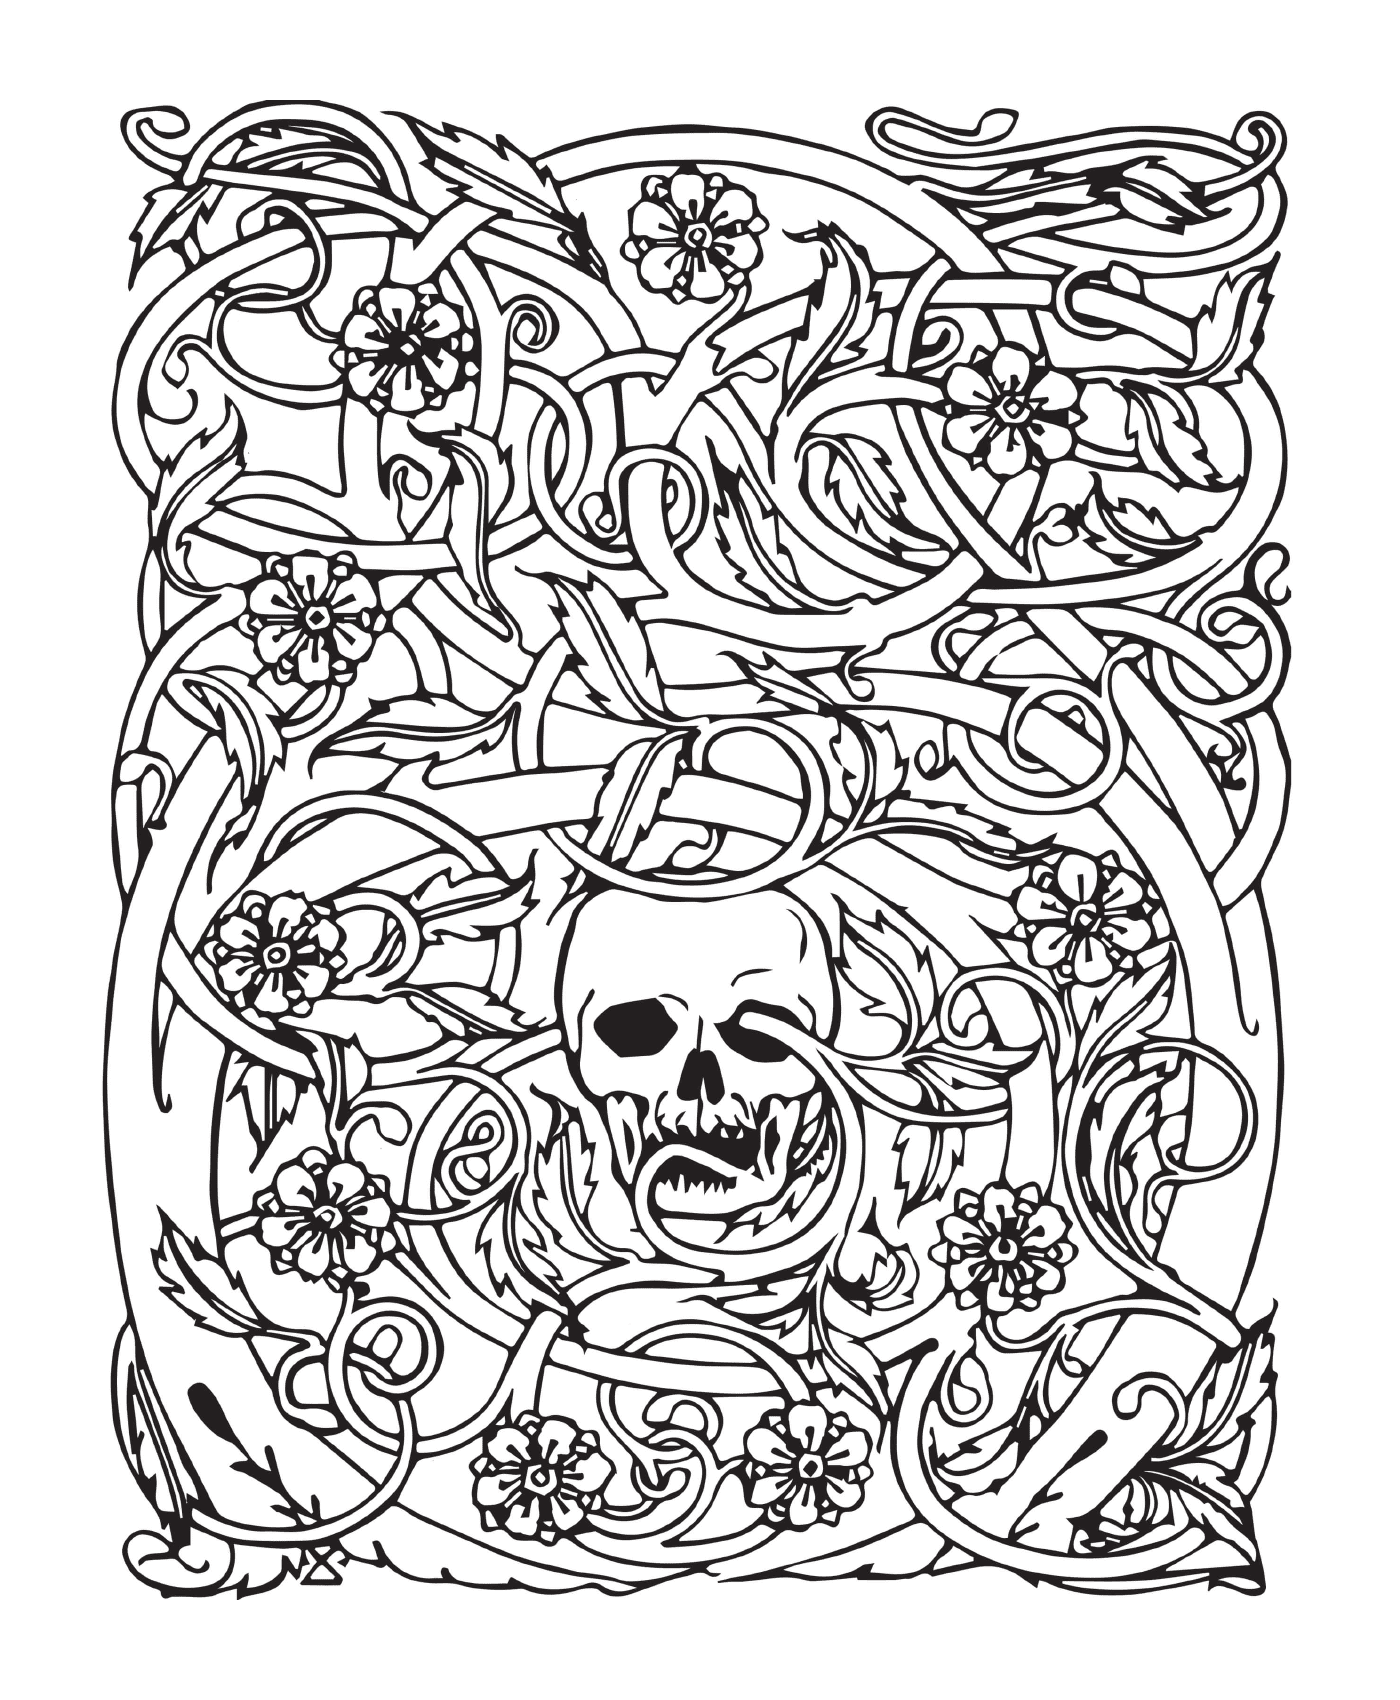  Erwachsene Halloween, komplexes Skelett, umgeben von Blumen 